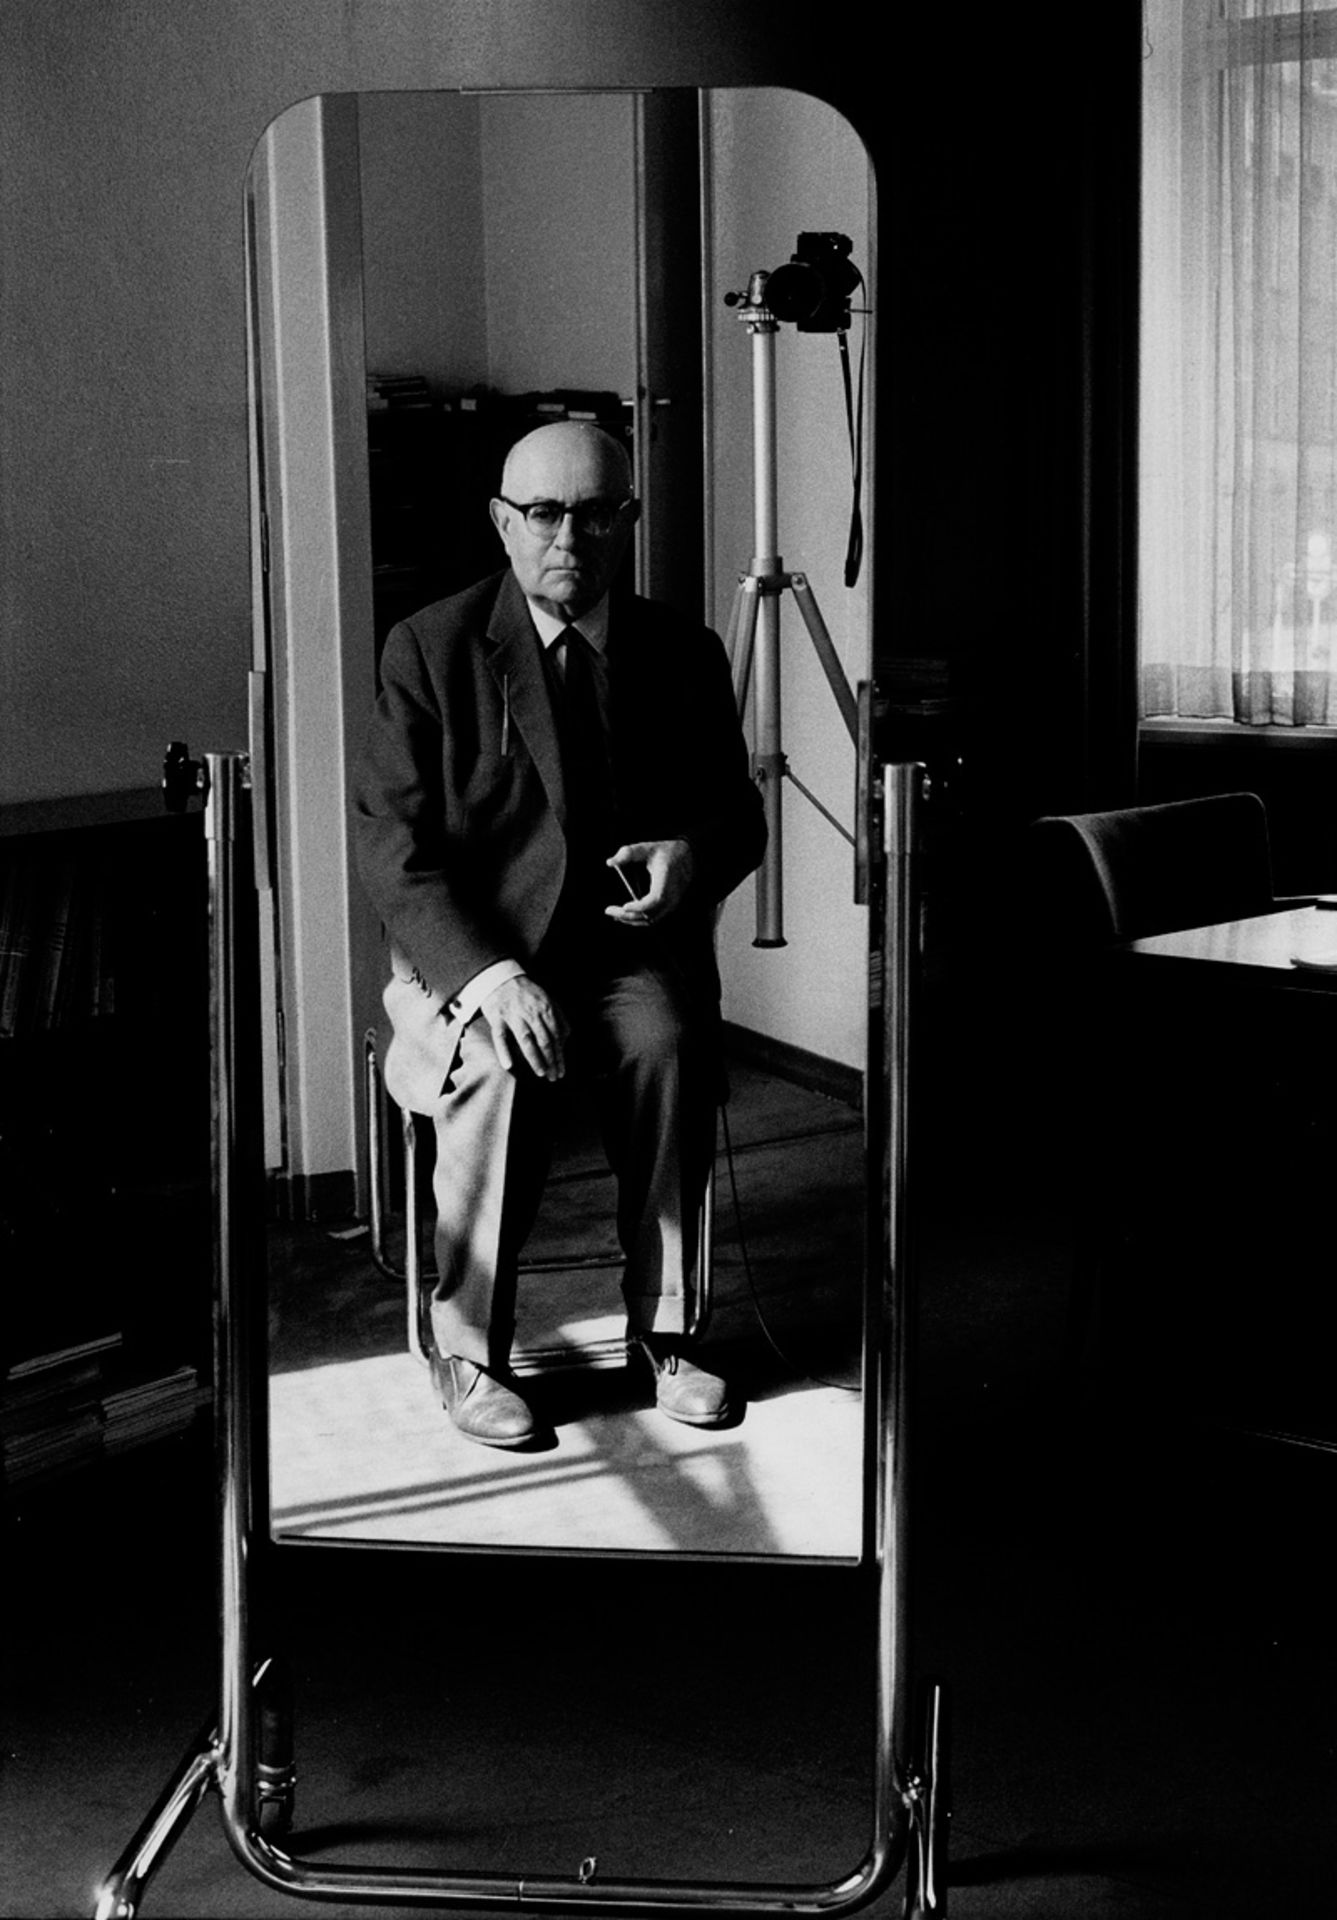 Moses, Stefan: Theodor W. Adorno, Frankfurt